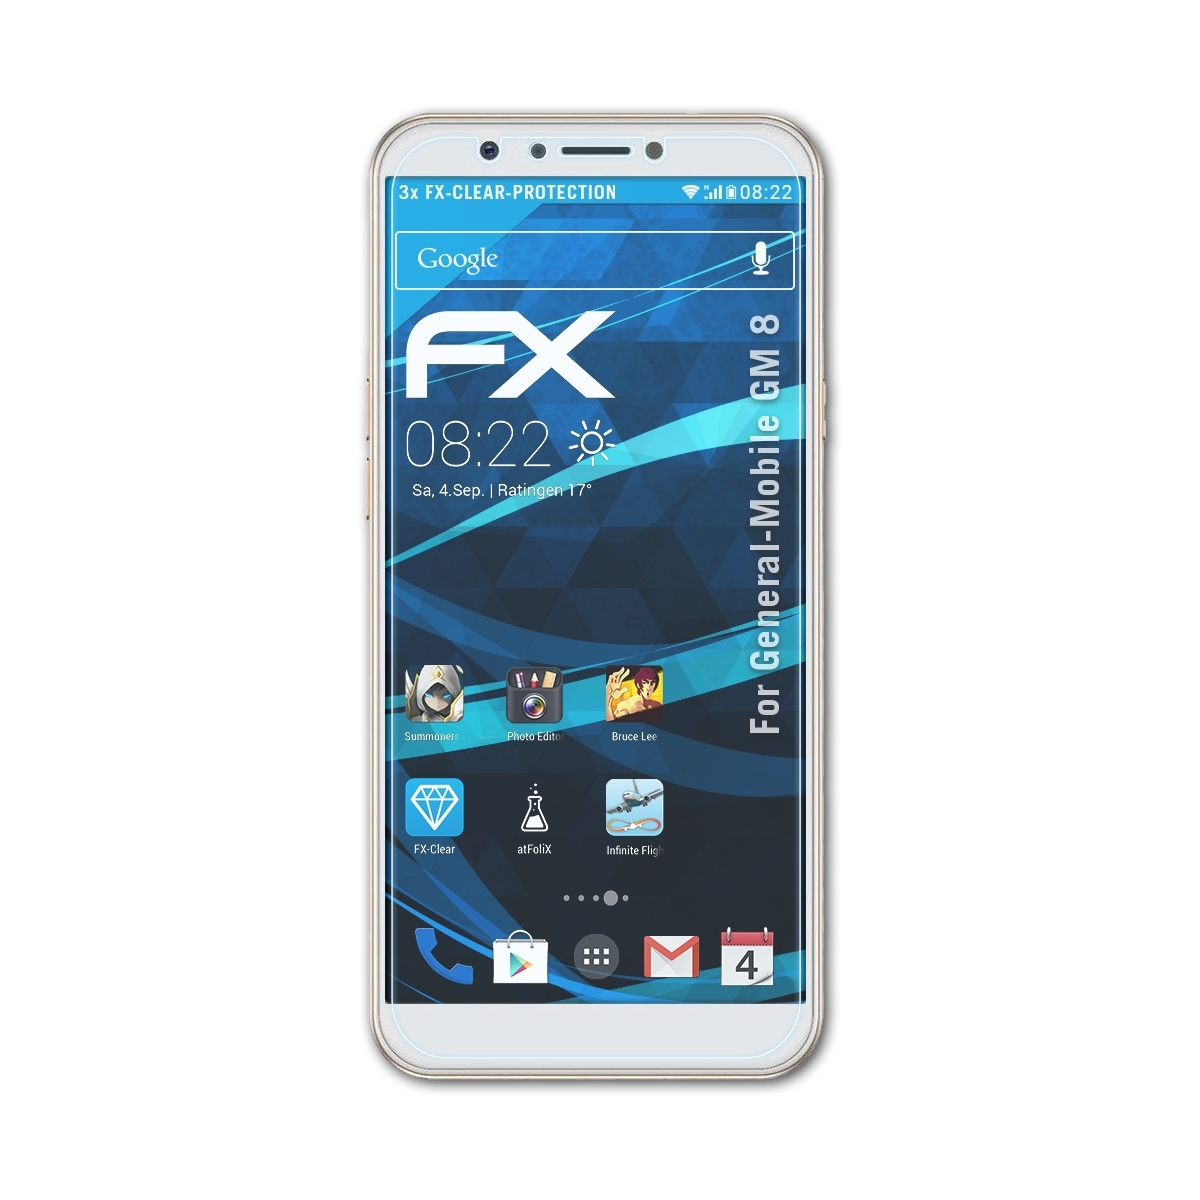 Displayschutz(für General-Mobile ATFOLIX FX-Clear 8) 3x GM